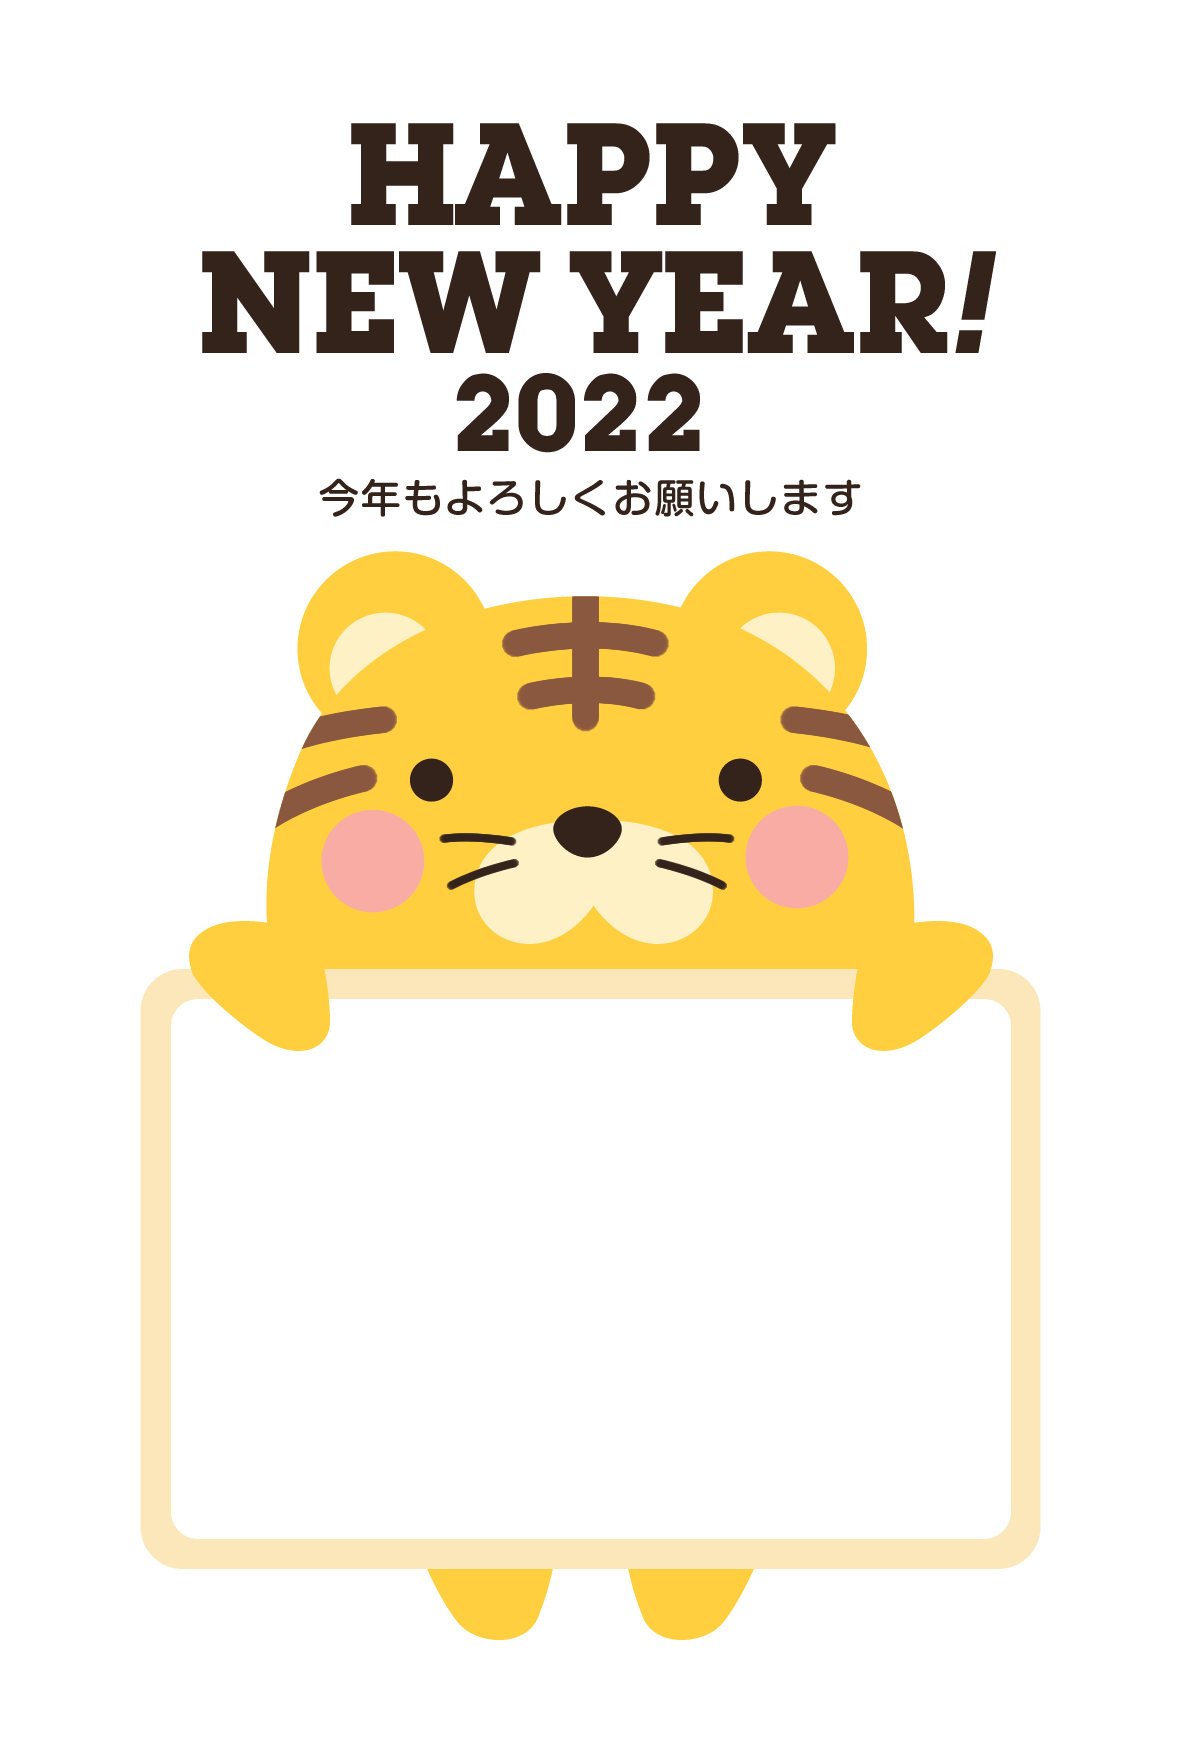 【写真フレーム】2022年賀状無料テンプレート「フォトフレームを持つかわいいトラ」